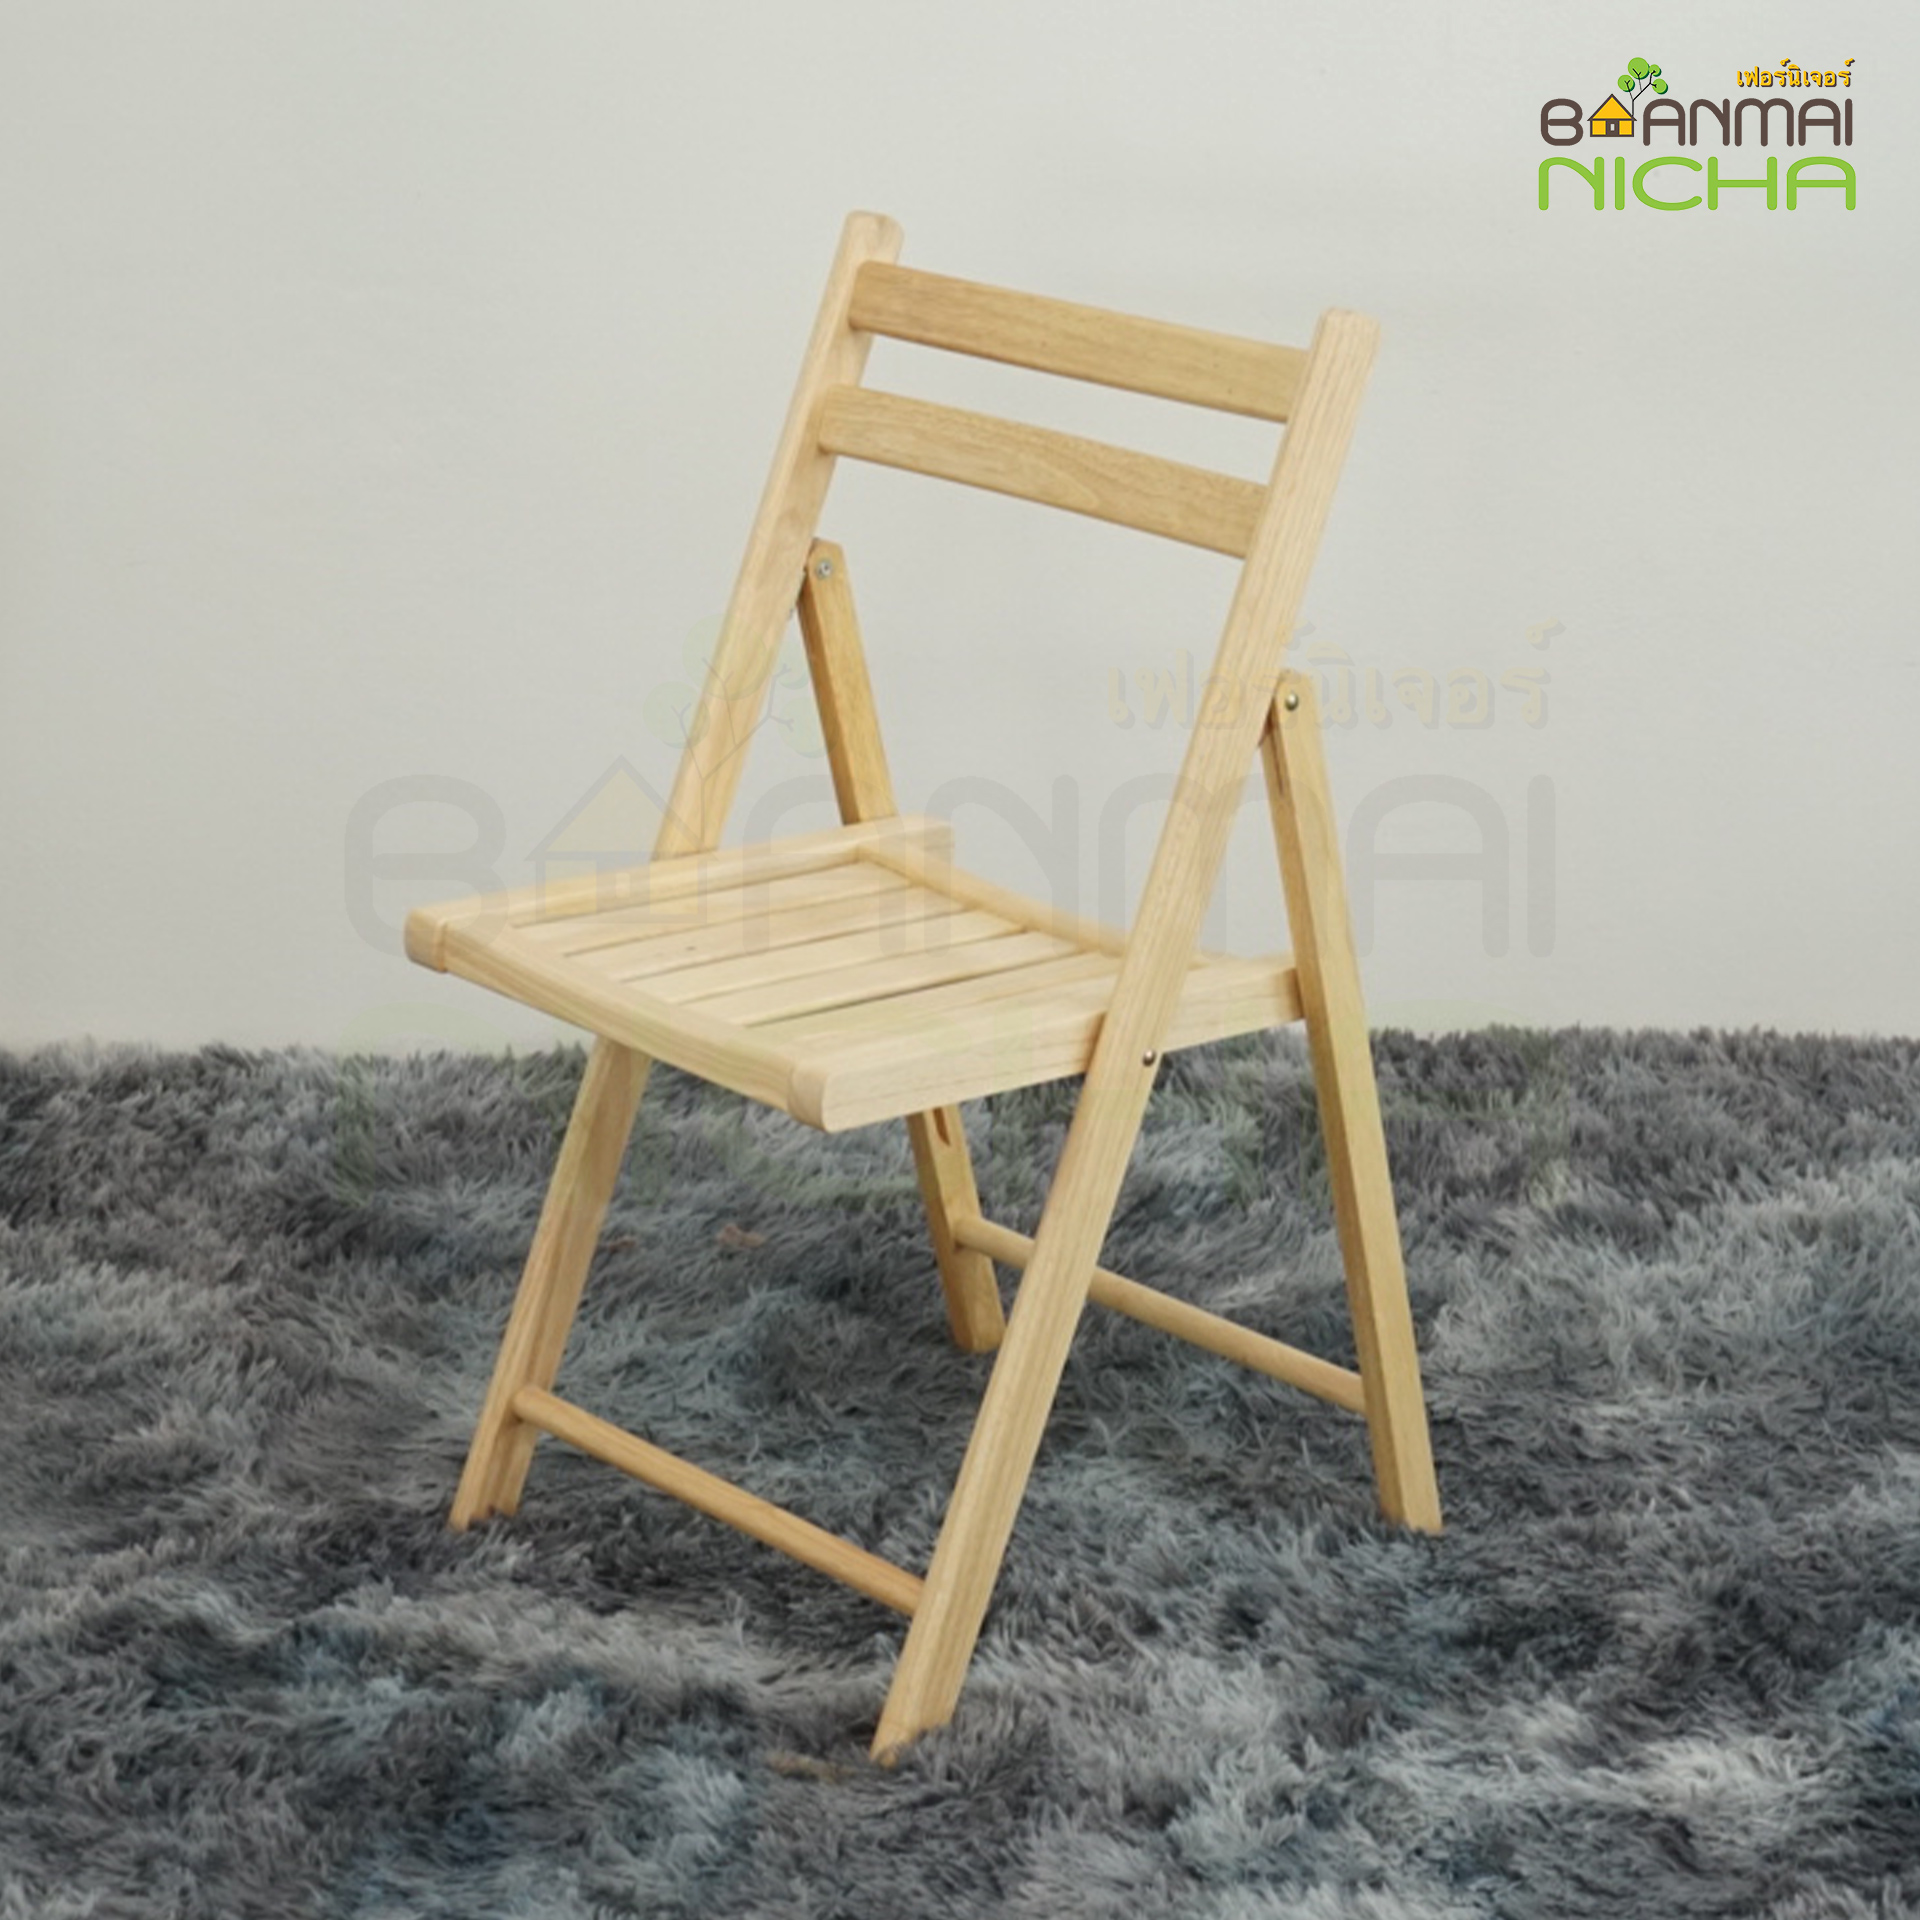 เก้าอี้กินข้าว เก้าอี้ไม้พับได้ เก้าอี้มีพนักพิง เก้าอี้ไม้ยางพารา เก้าอี้นั่งเล่น รุ่นมีเบาะ รุ่น Yแชร์ Size: 50x45xสูง45 cm. จัดส่งฟรี!